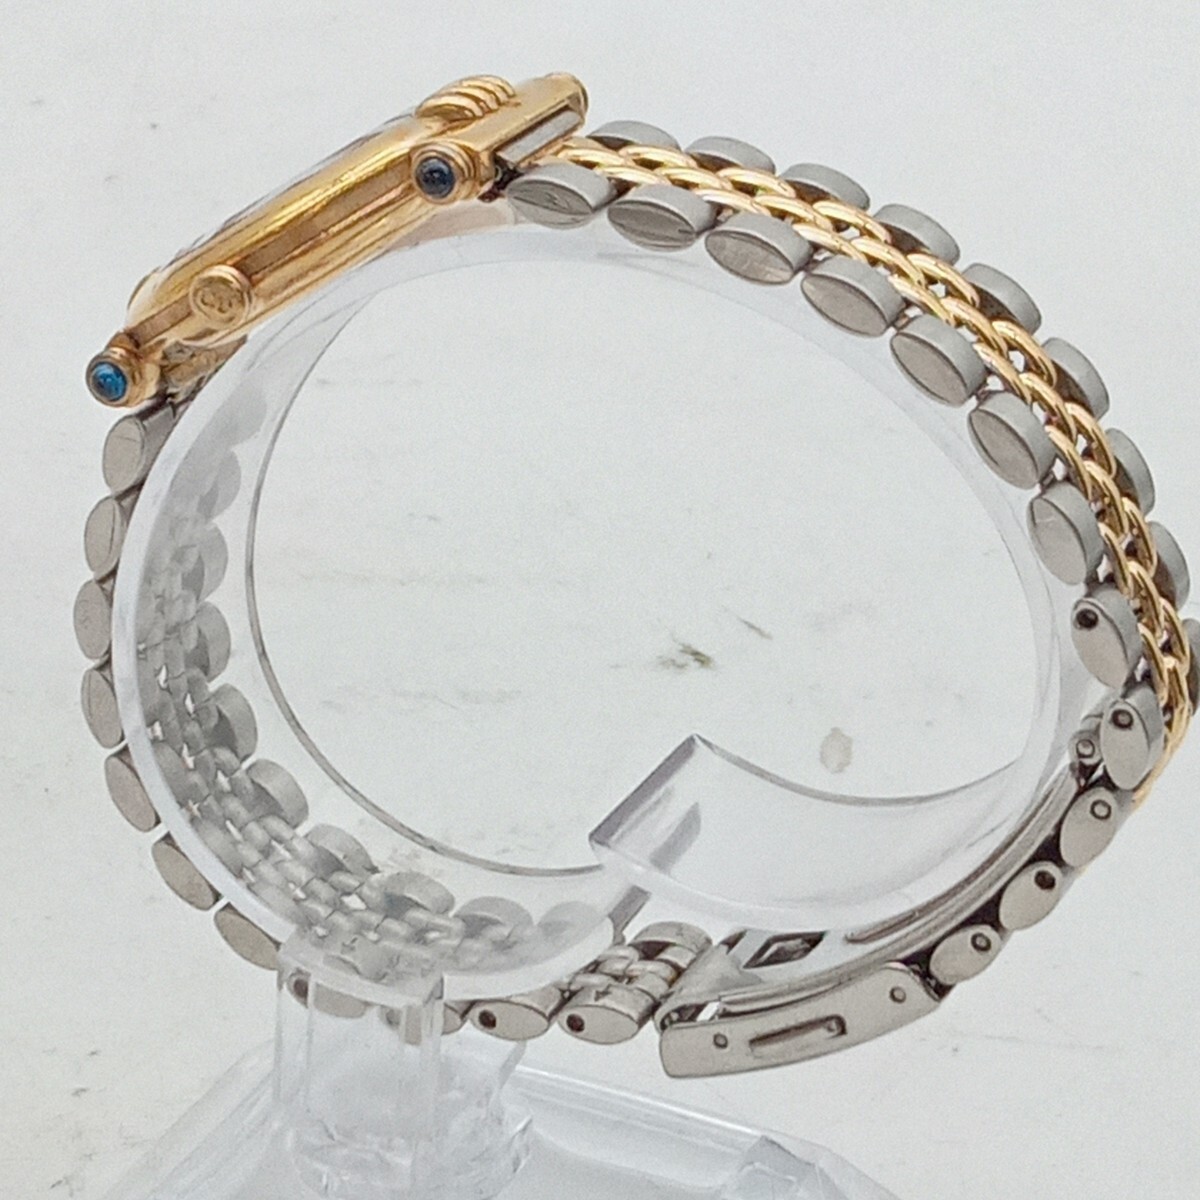  Сугимото 4 месяц No.150 наручные часы Christian Dior Christian Dior работоспособность не проверялась оттенок серебра синий циферблат общий рисунок Logo раунд 